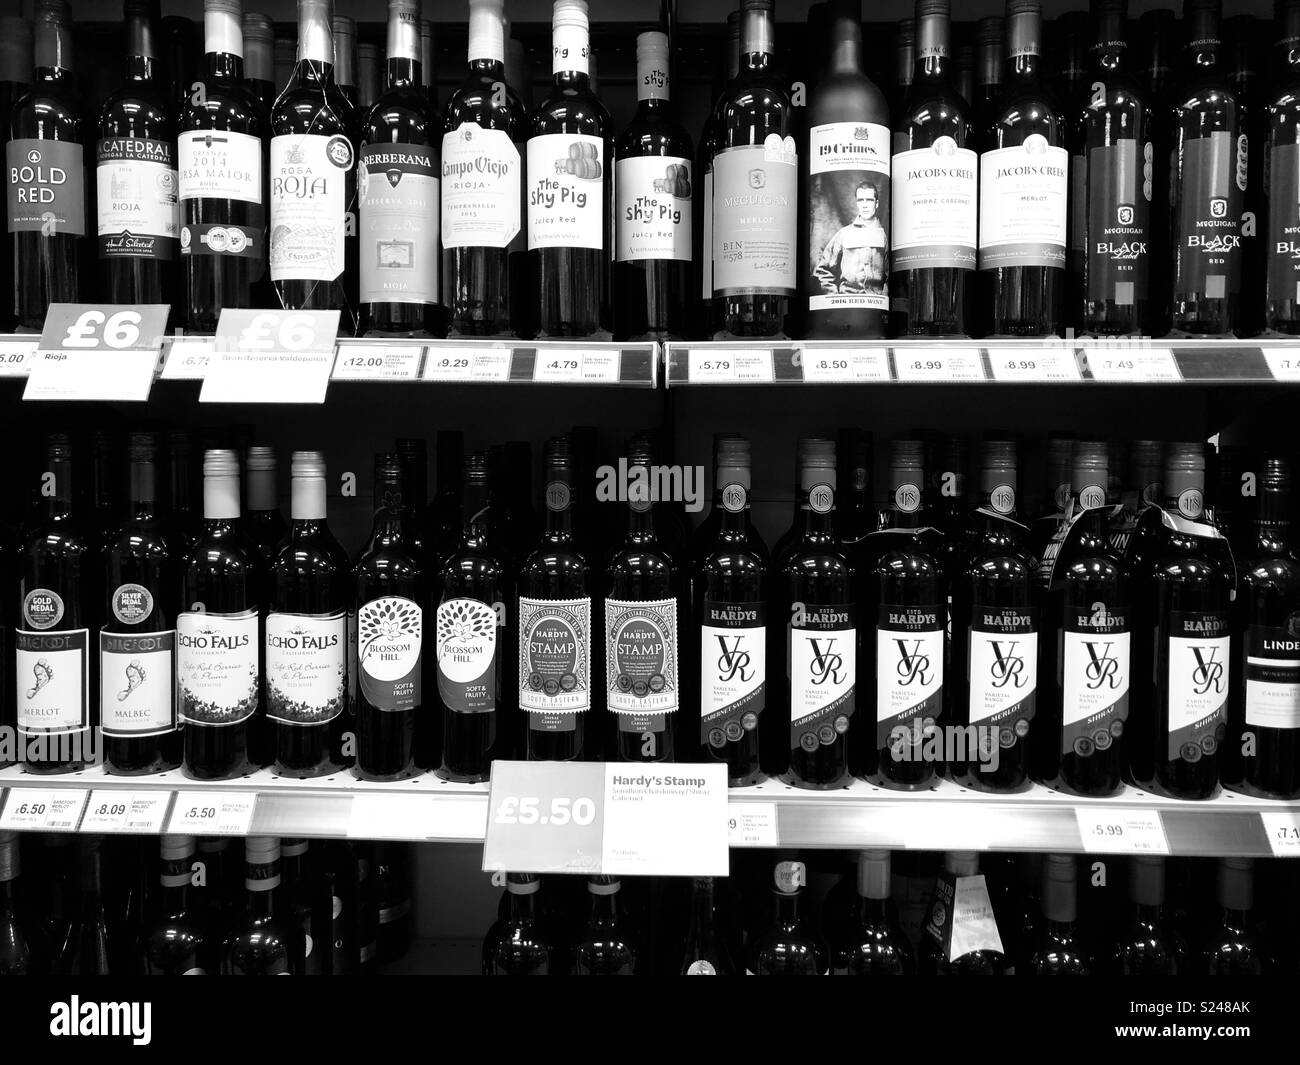 Display of wine bottles on shelf Stock Photo